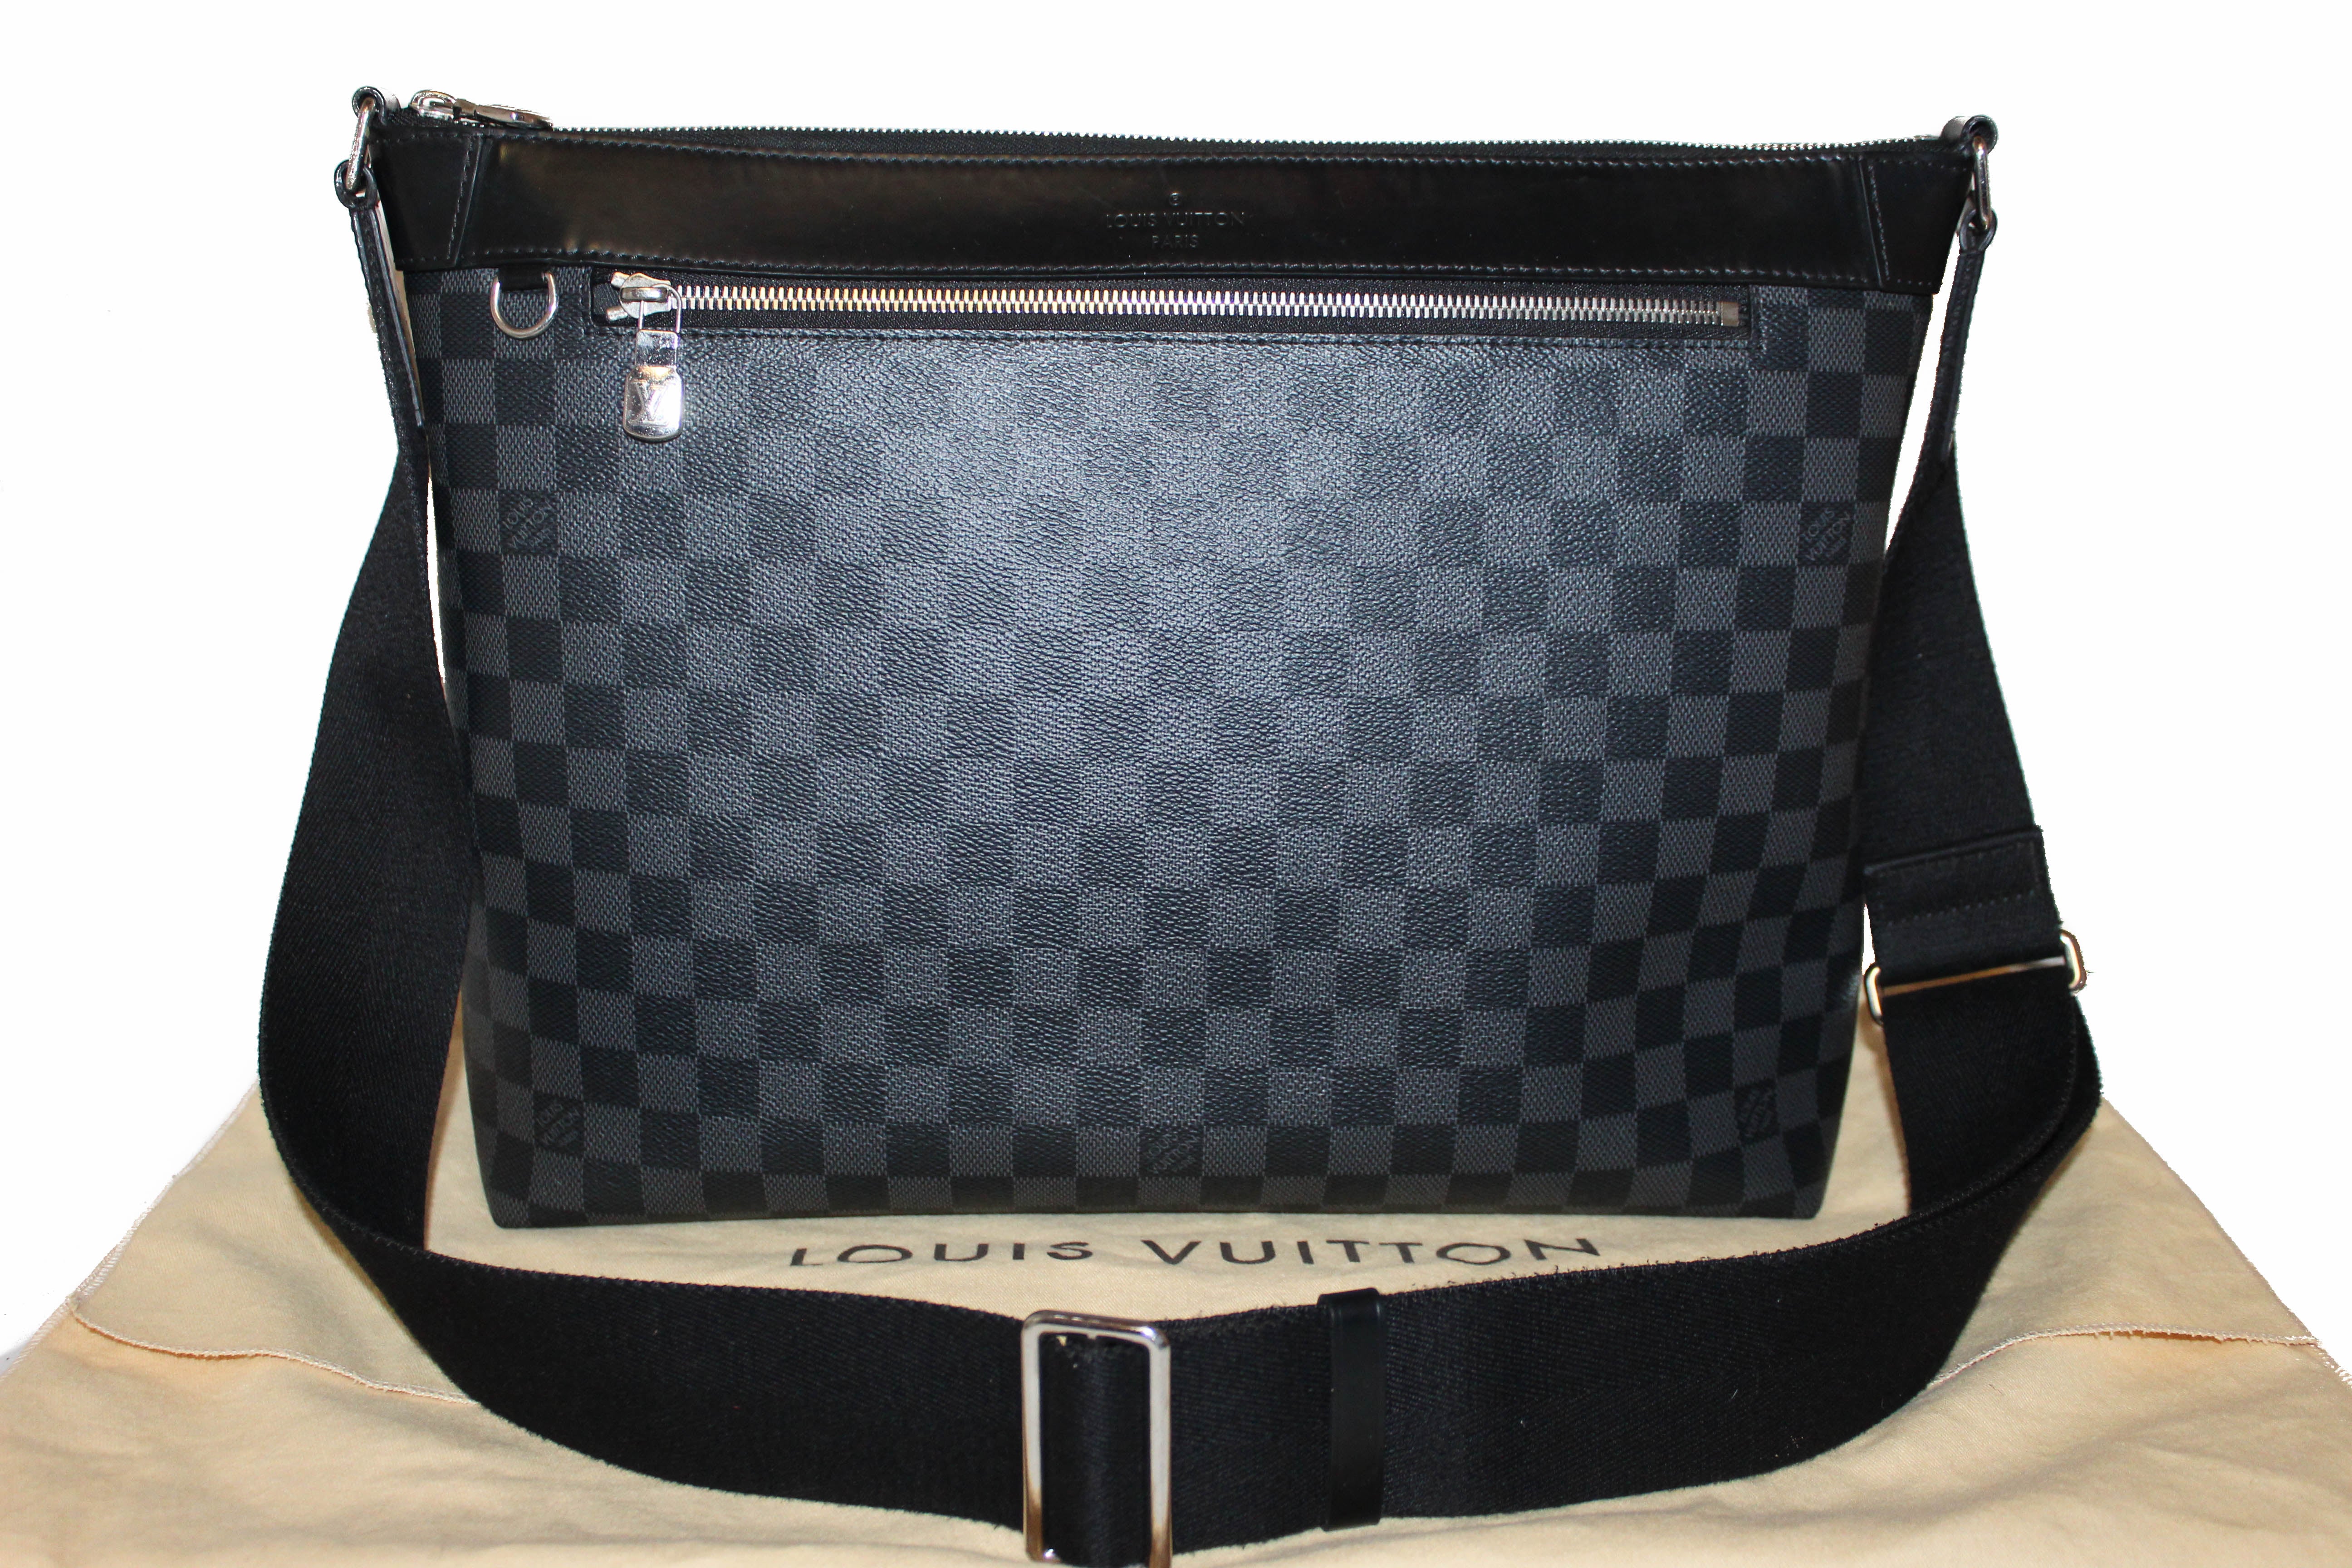 LOUIS VUITTON Damier Graphite District MM Silver Buckle Shoulder Bag  Black/Blue